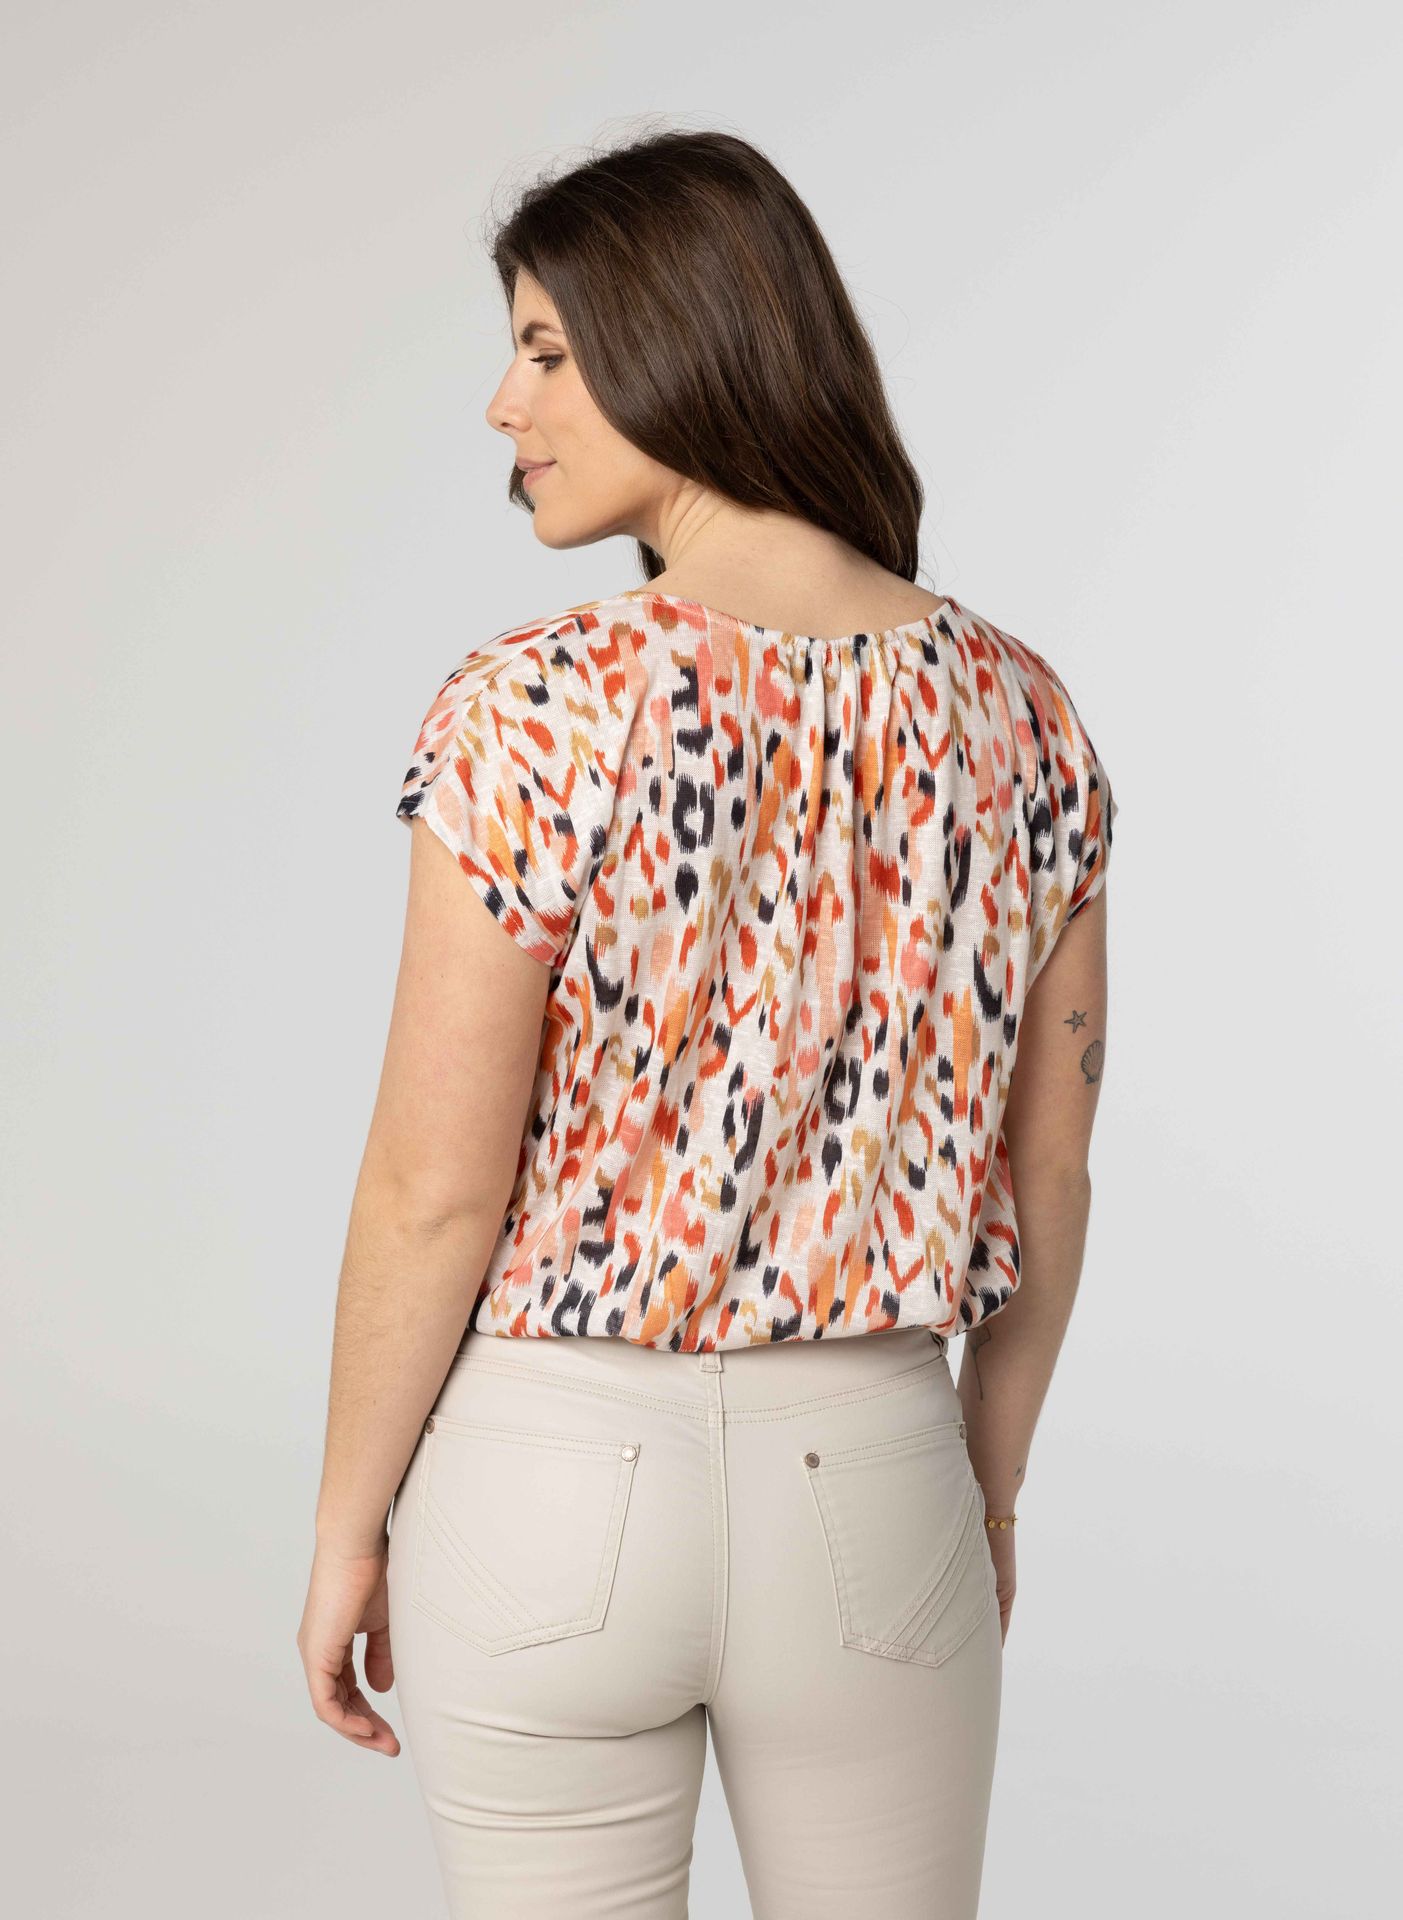 Norah Meerkleurig fijngebreid shirt multicolor 213687-002